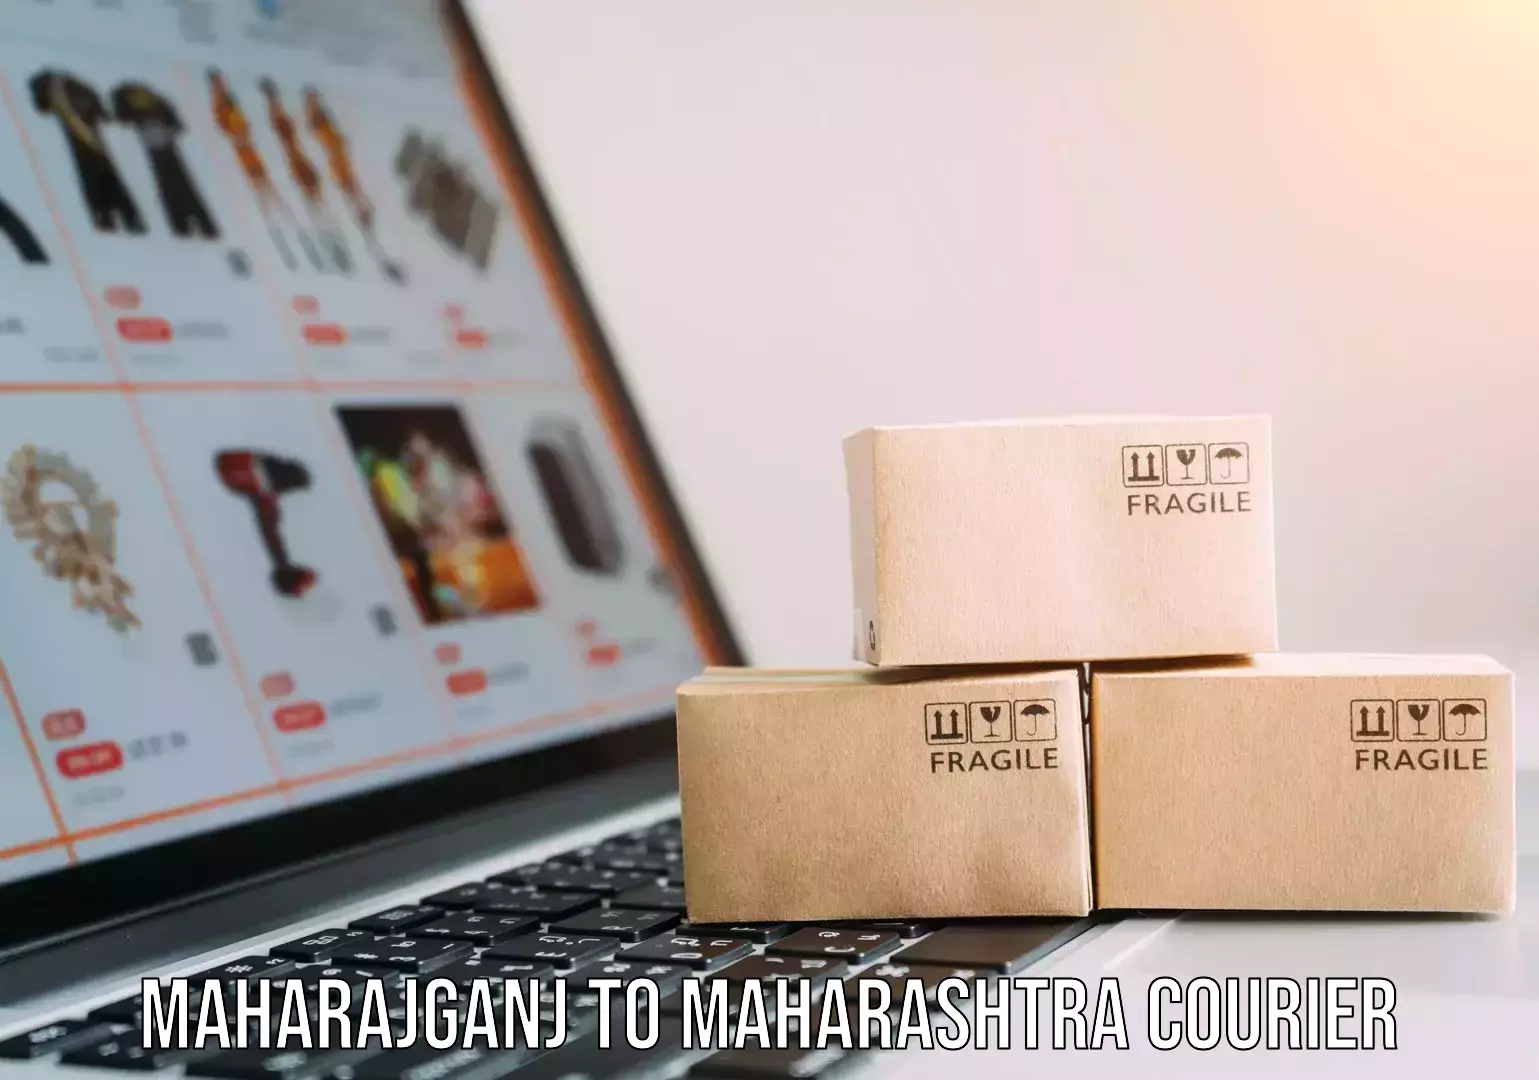 Moving and packing experts Maharajganj to Maharashtra